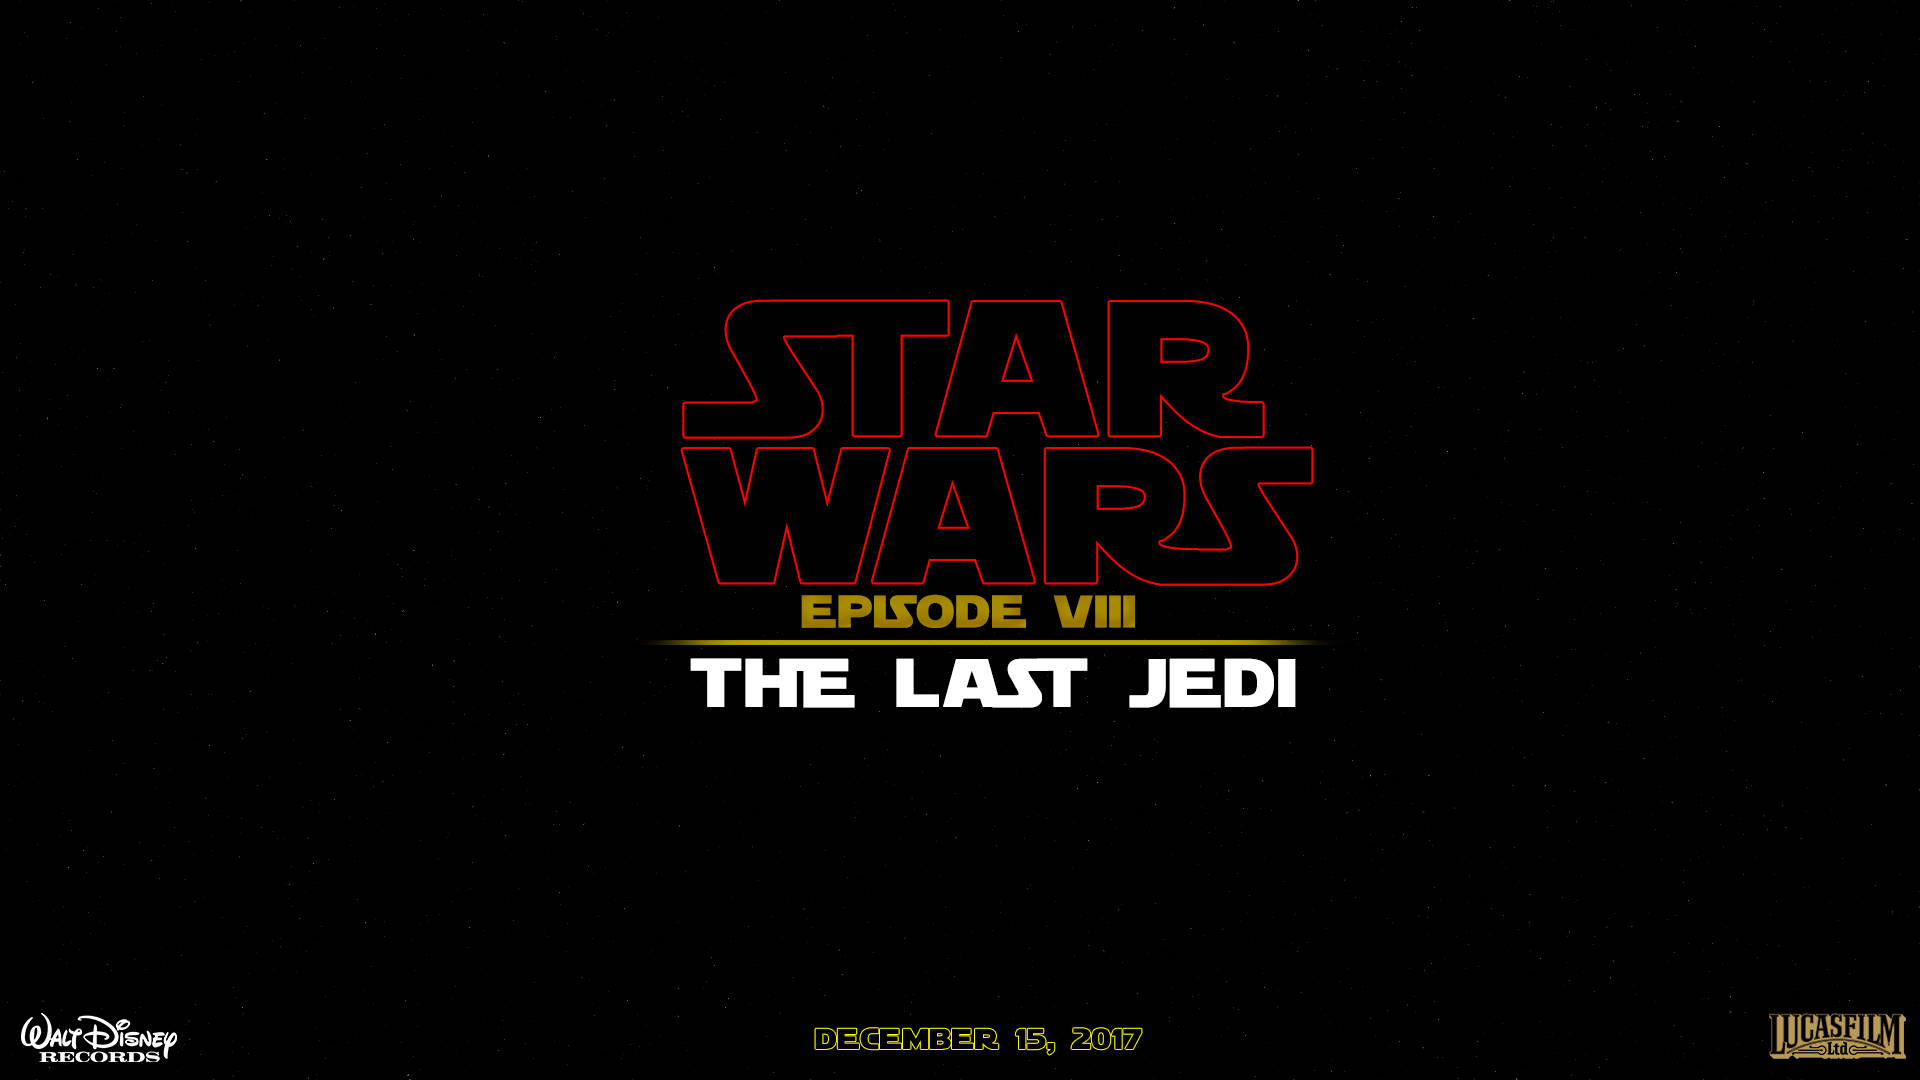 The Last Jedi Star Wars Series Wallpaper